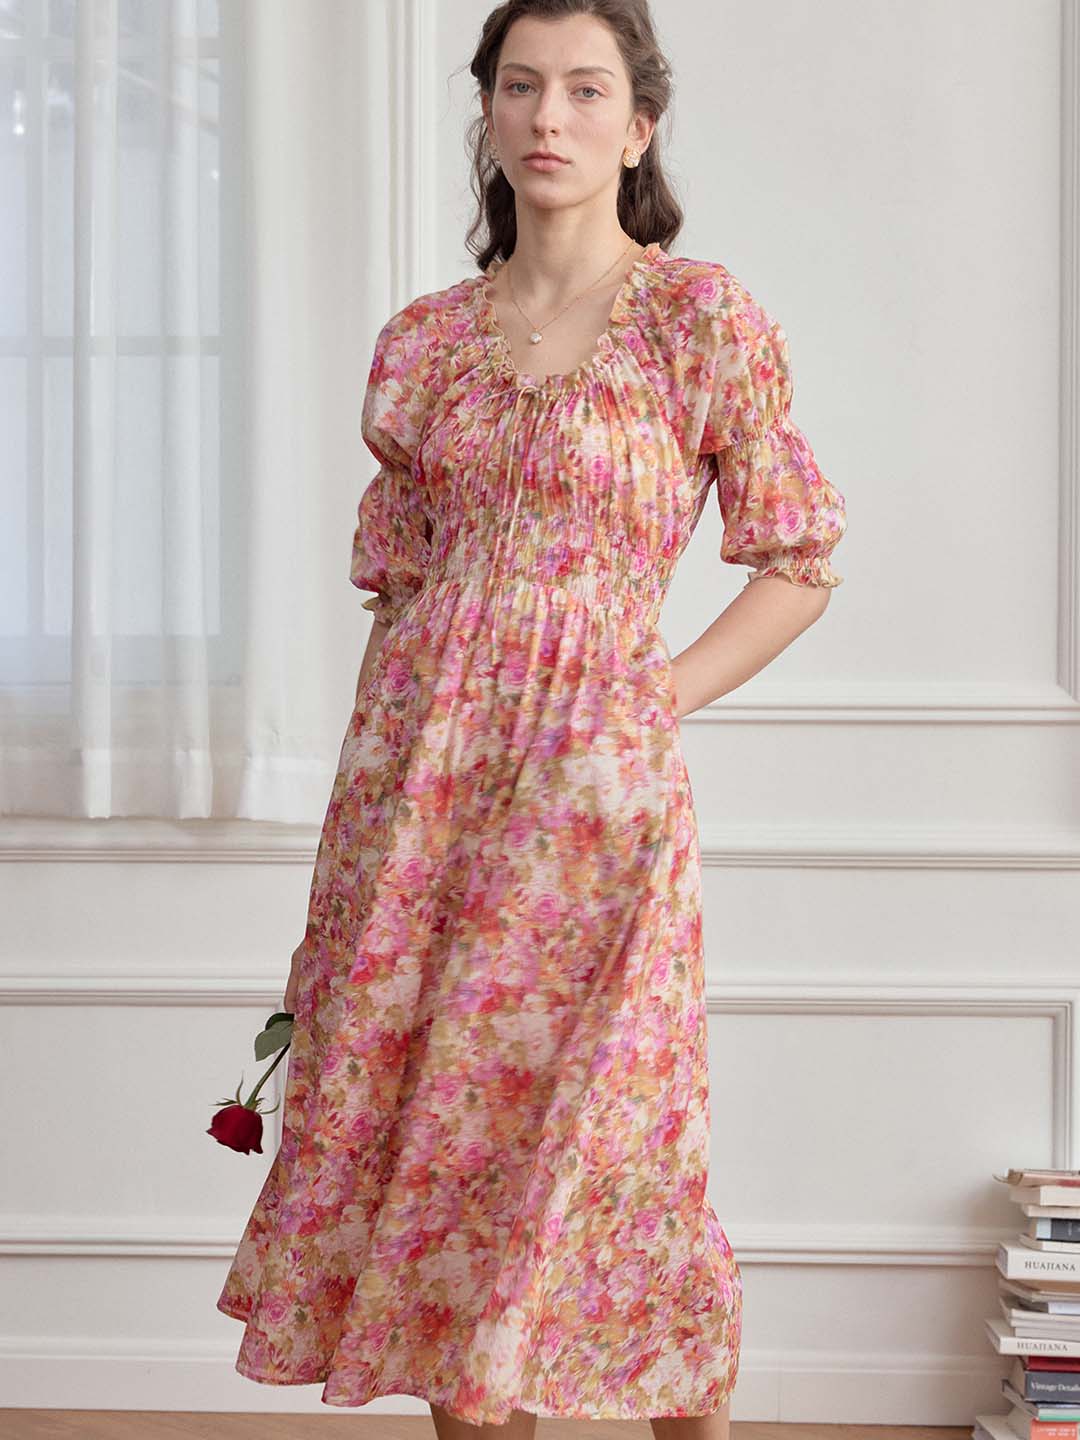 Skyler Floral Print Off Shoulder Dress